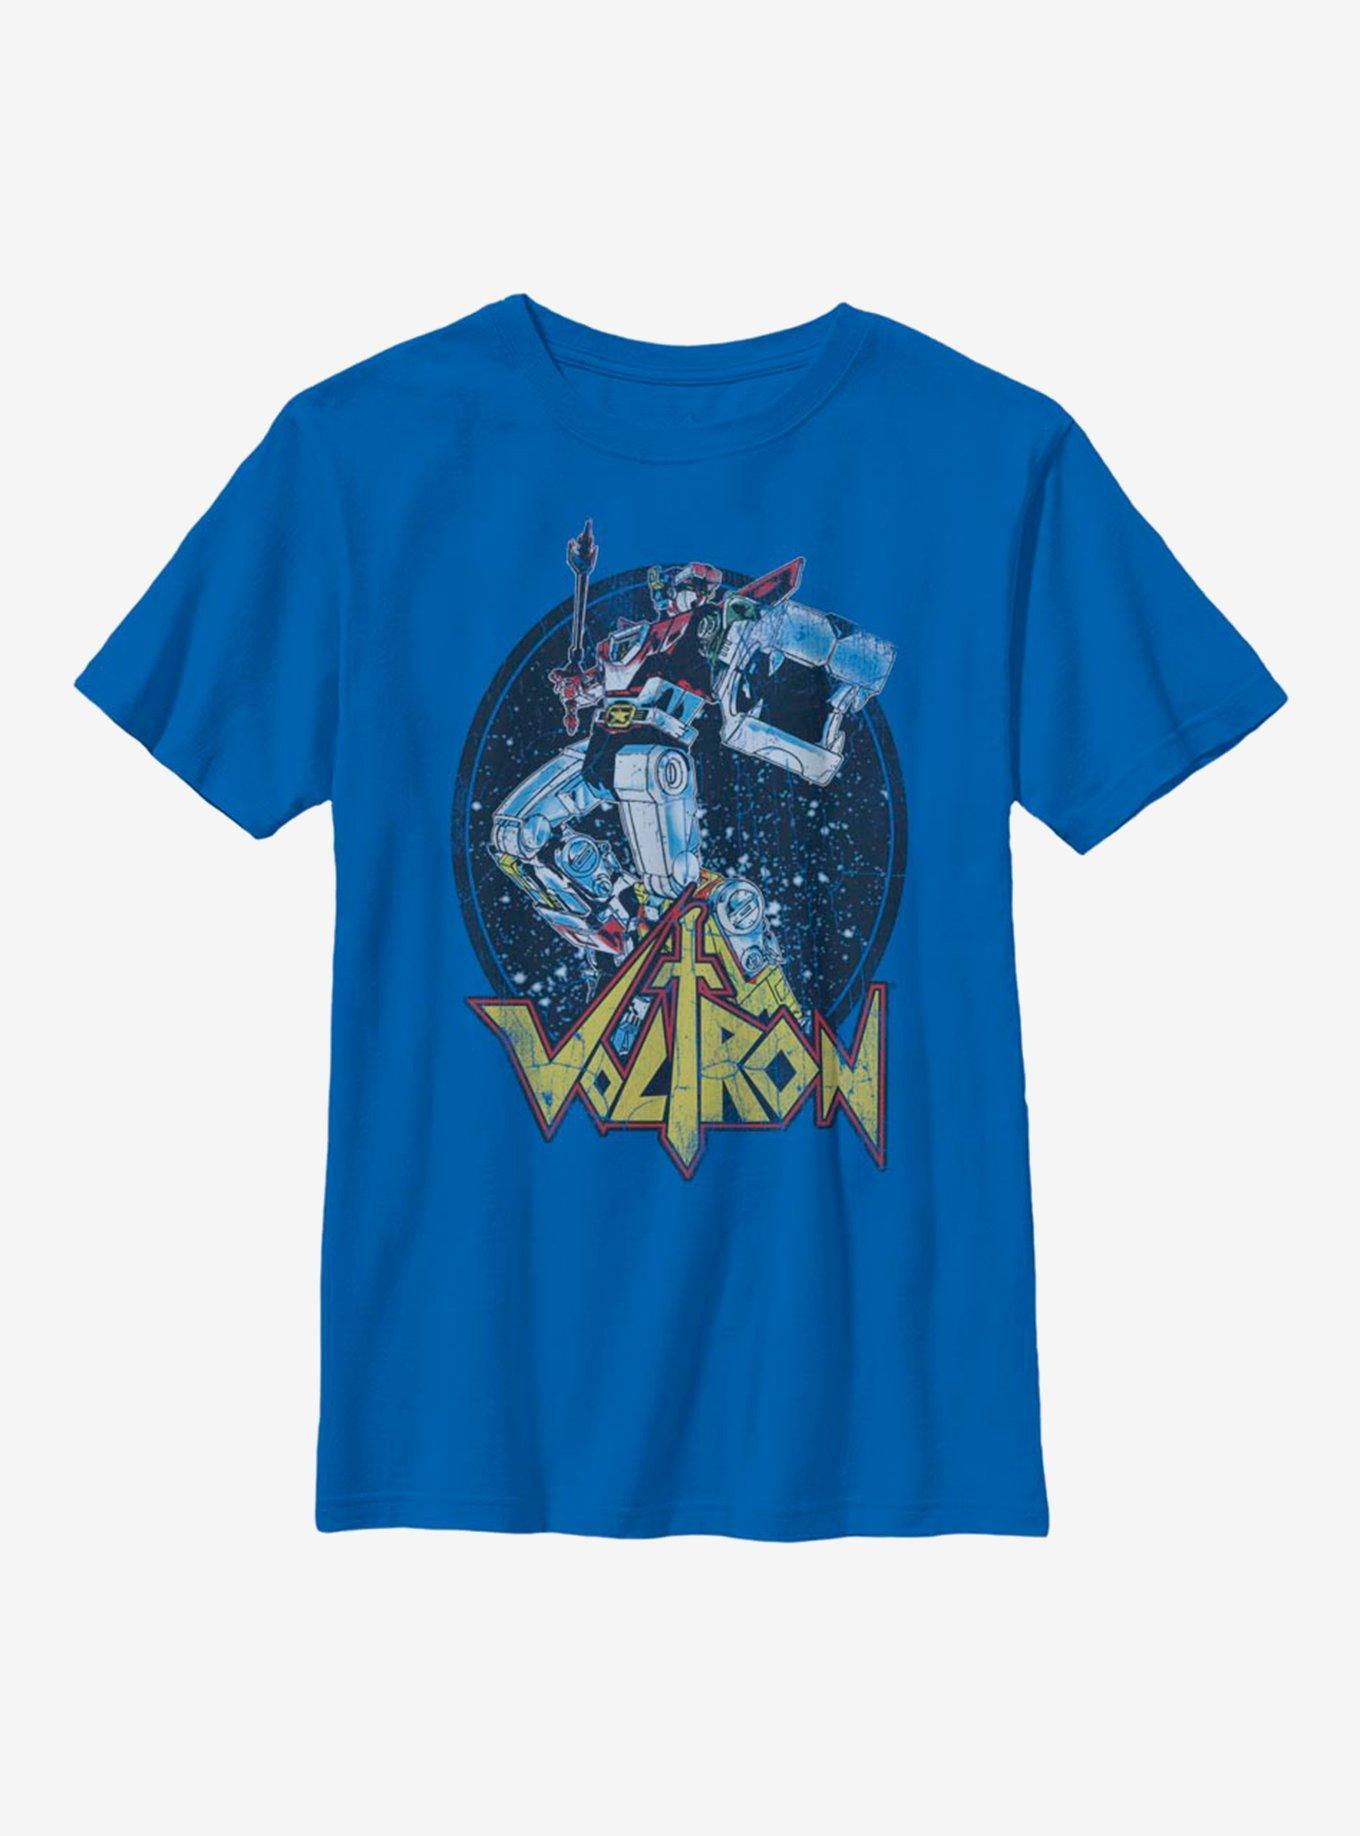 Voltron: Legendary Defender Biggest Defender Youth T-Shirt, ROYAL, hi-res